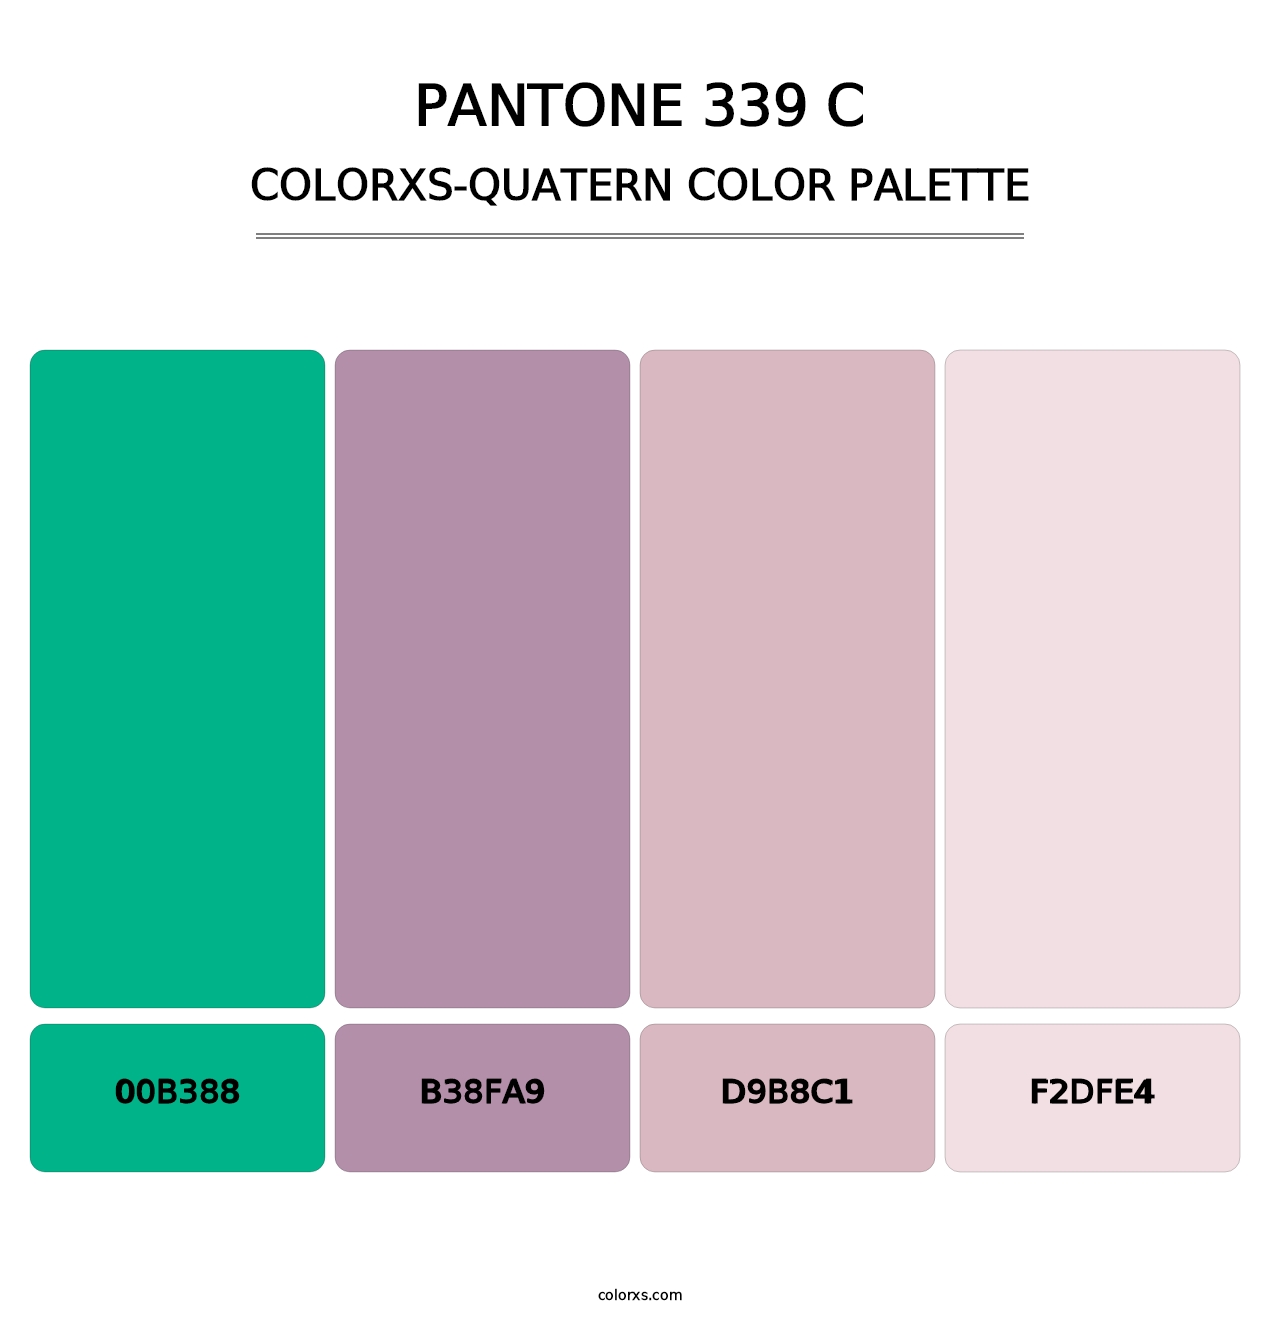 PANTONE 339 C - Colorxs Quatern Palette